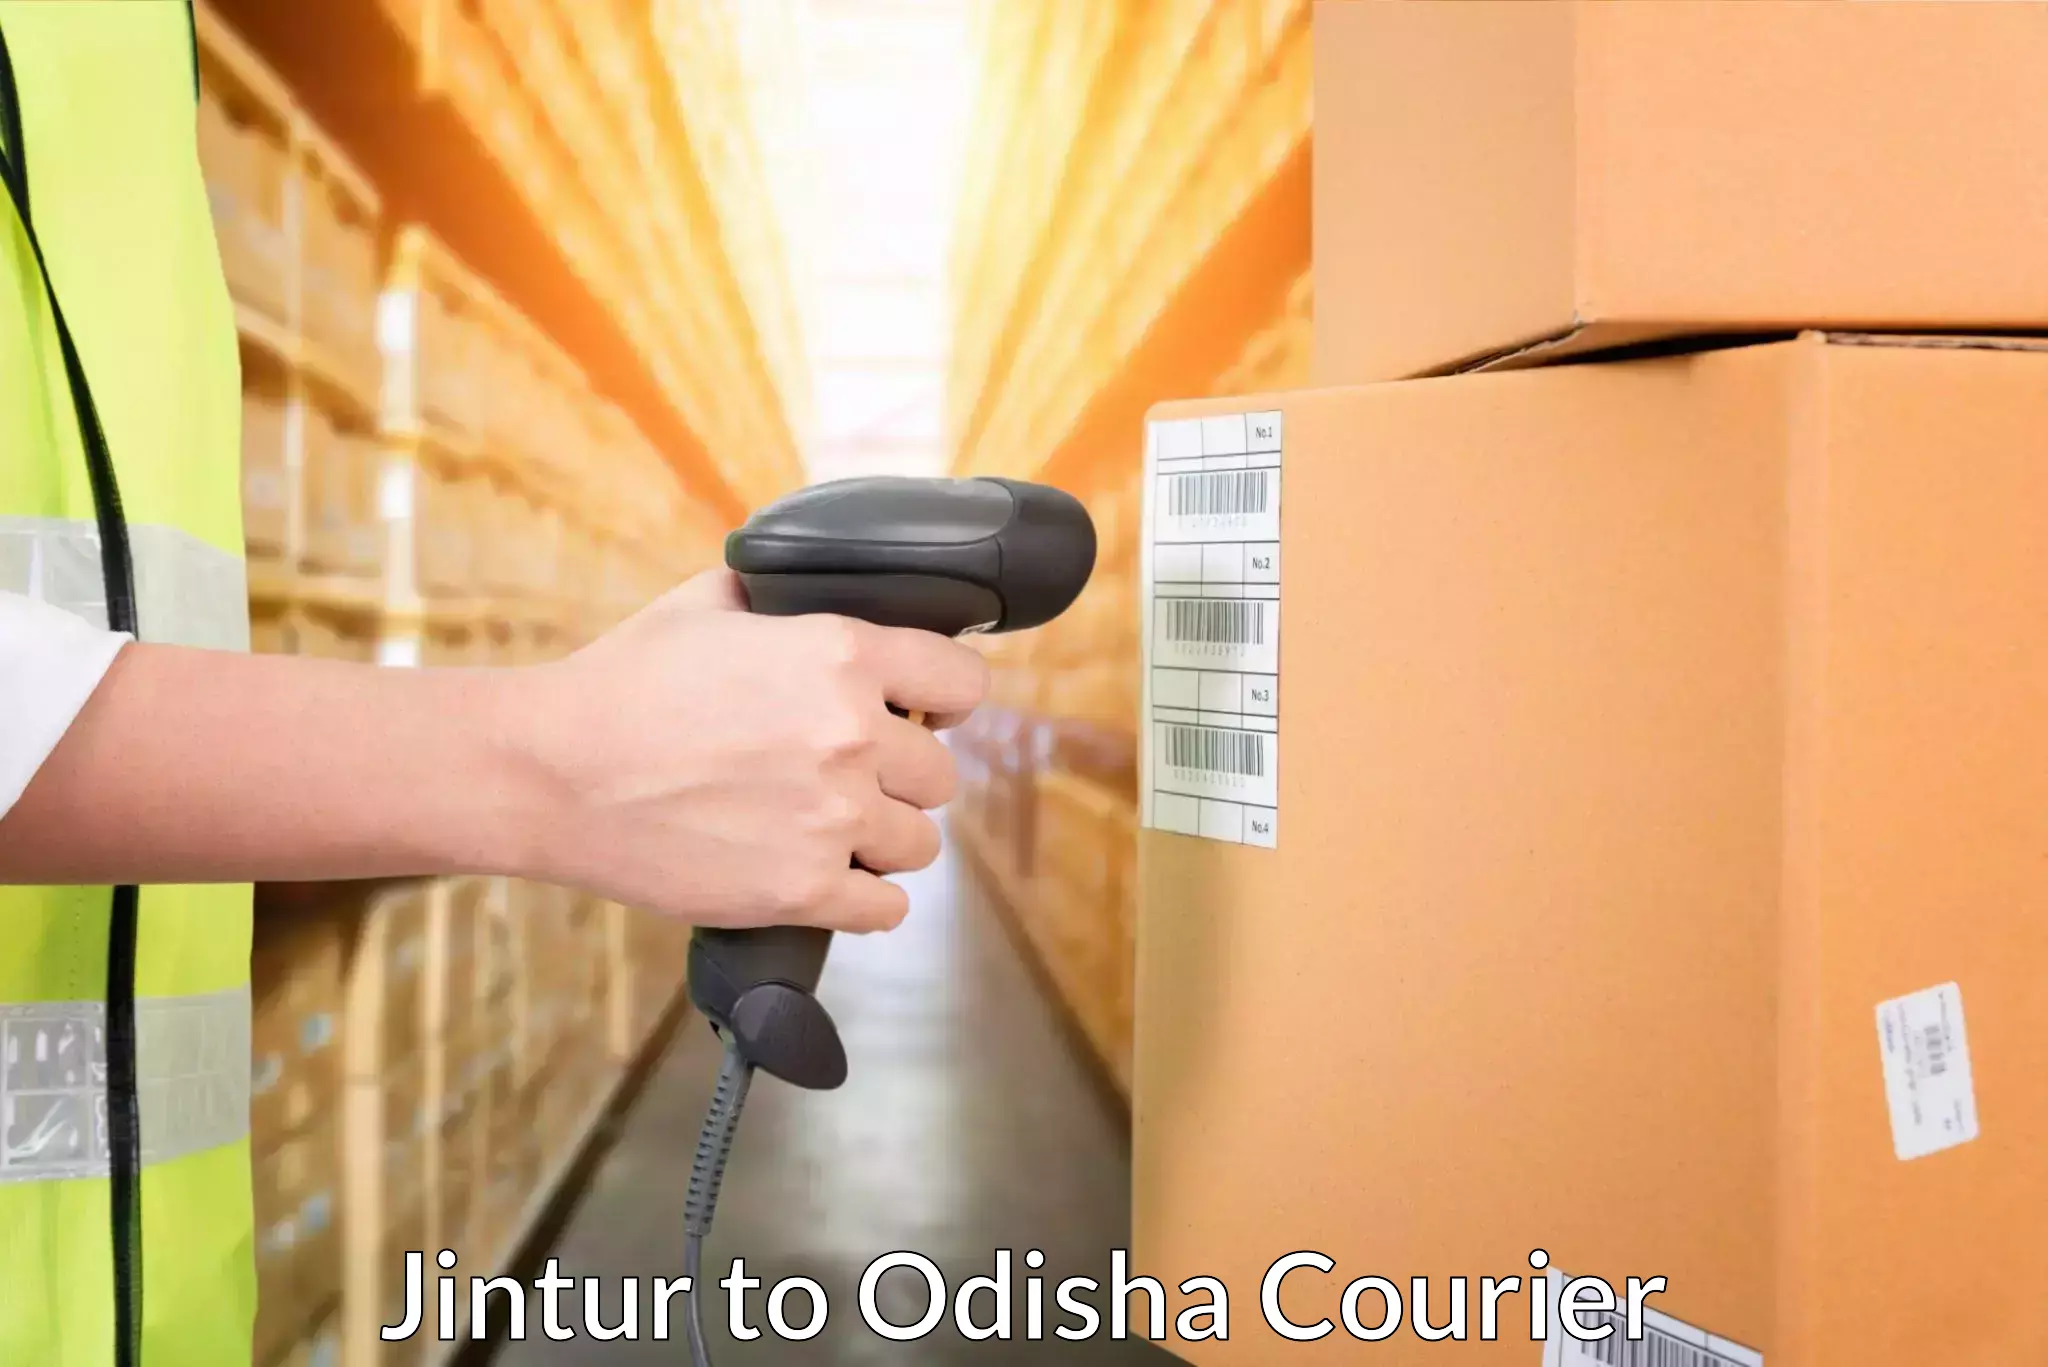 Efficient parcel service Jintur to Raruan